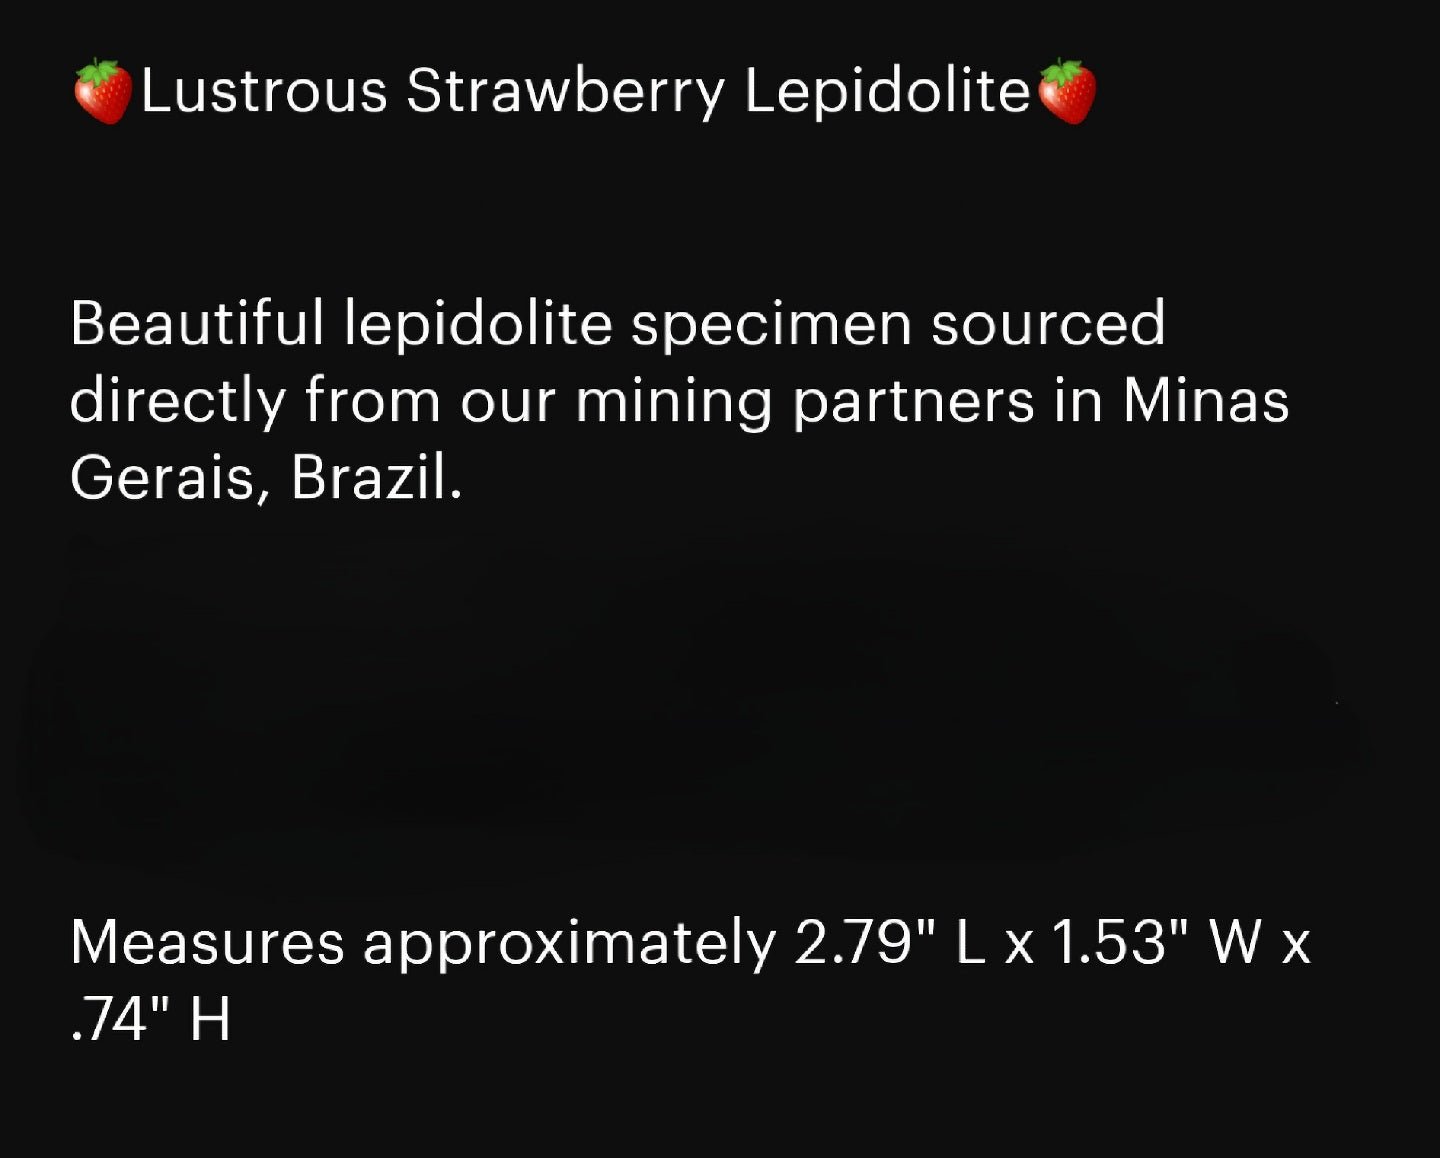 Lustrous Strawberry Lepidolite from Brazil